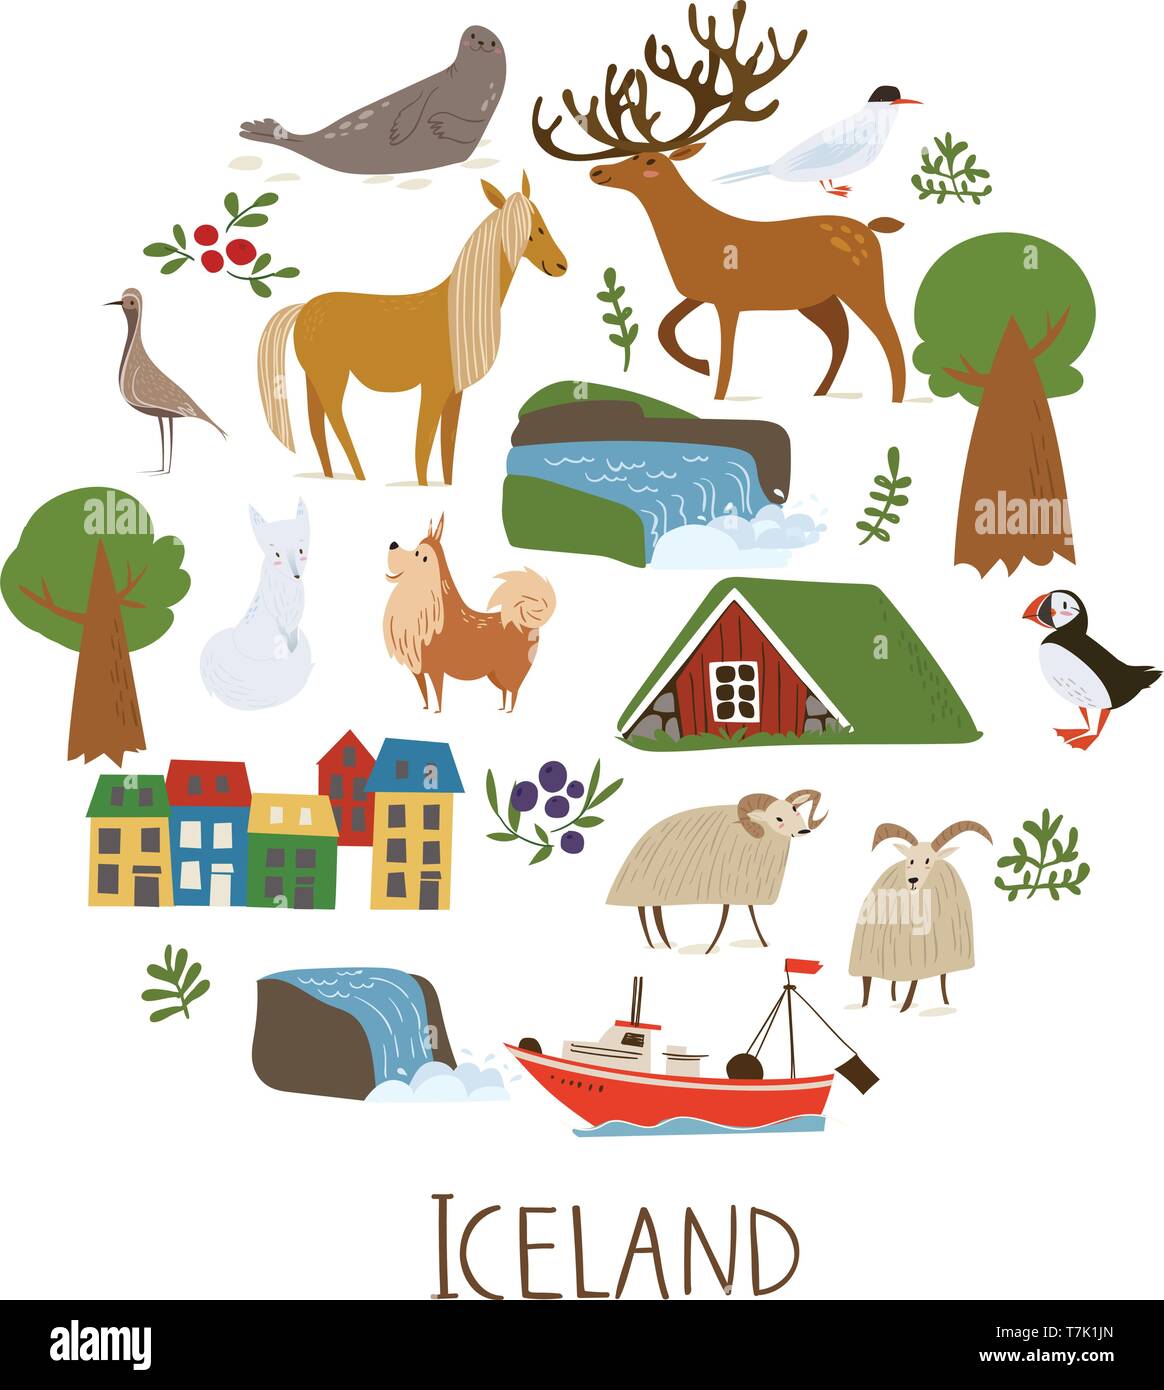 Islanda natura i simboli vettoriali di paesaggi, animali e architettura. Illustrazione Vettoriale